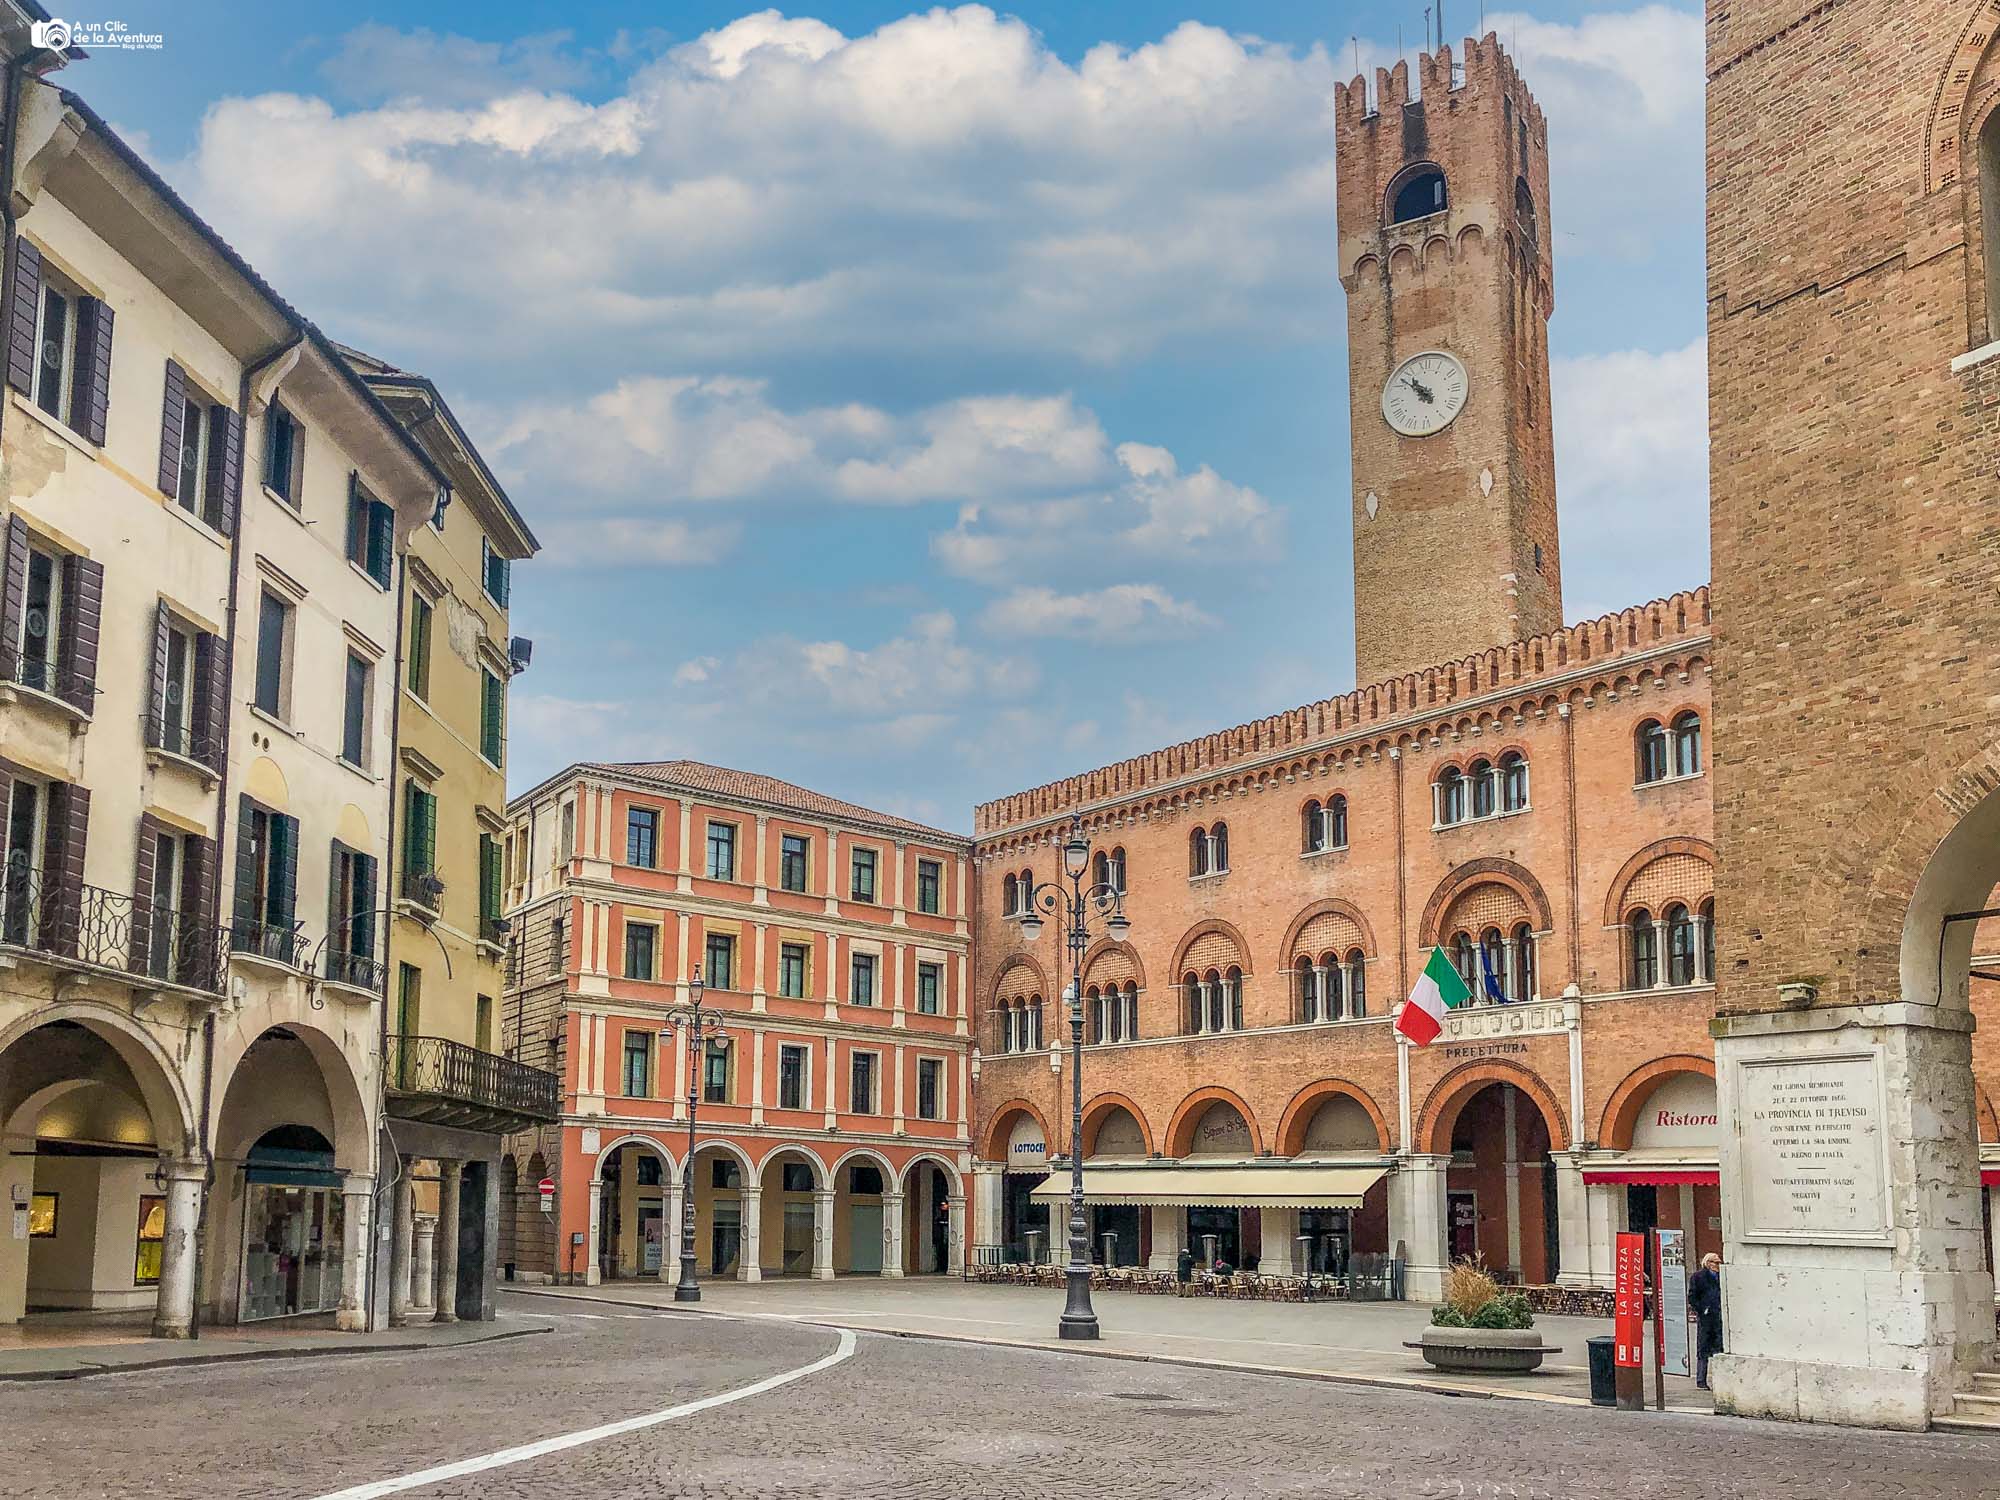 Piazza dei Signori de Treviso